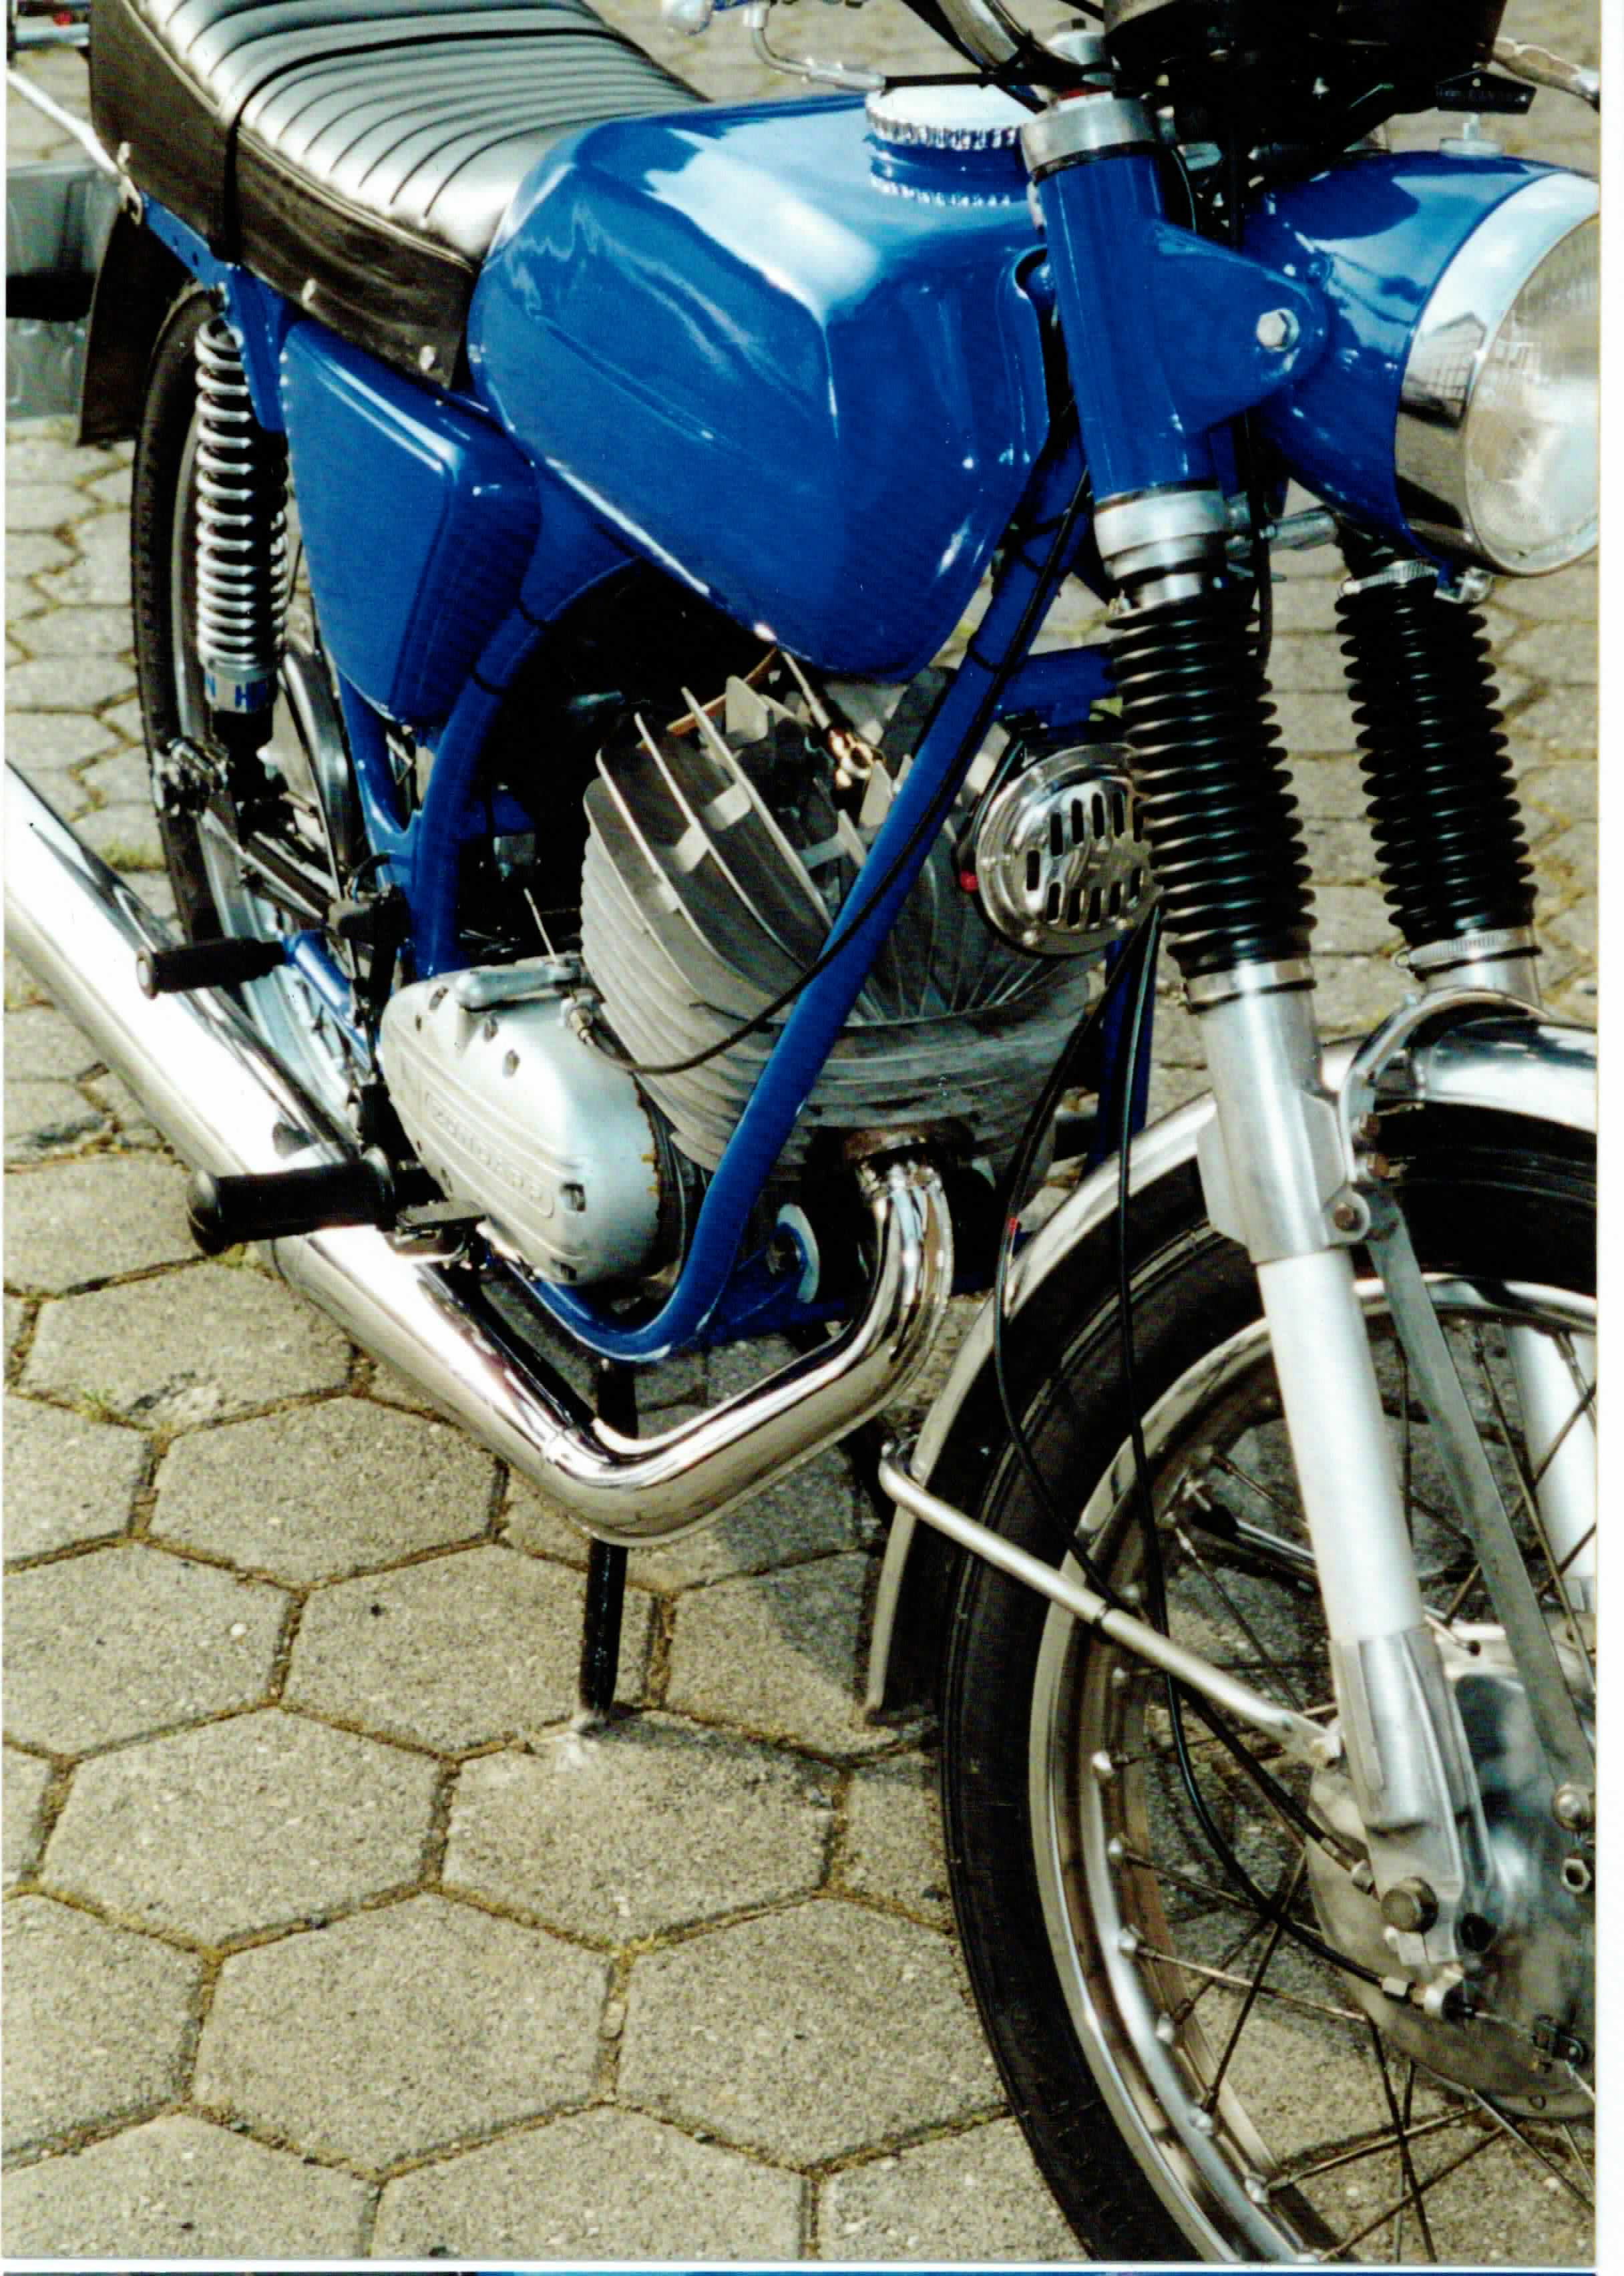 Zündapp KS125 in 2000